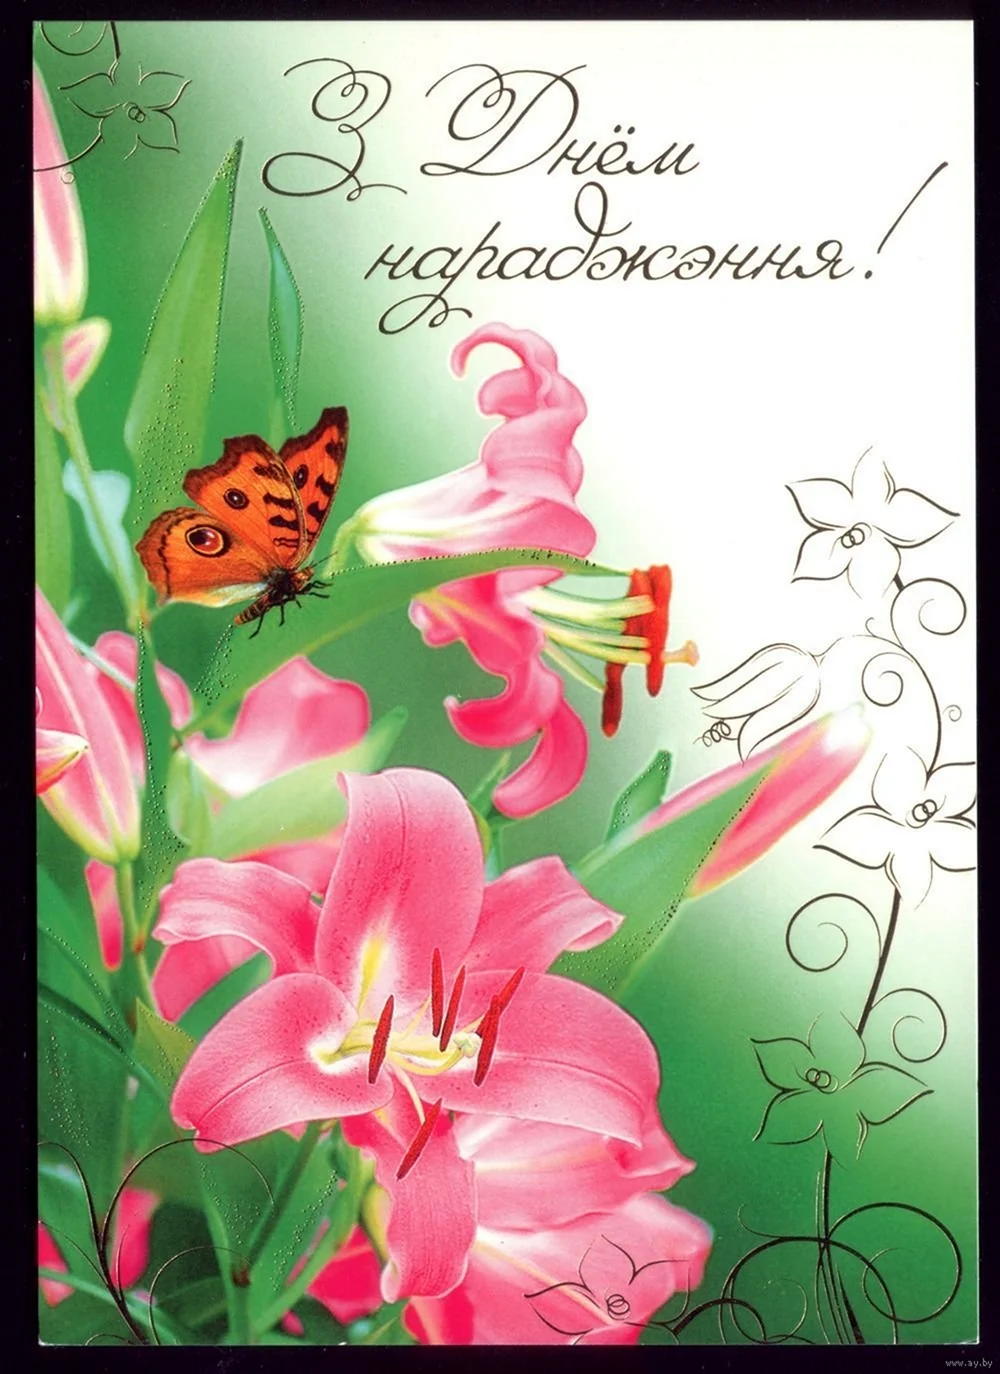 С днем рождения на белорусском языке